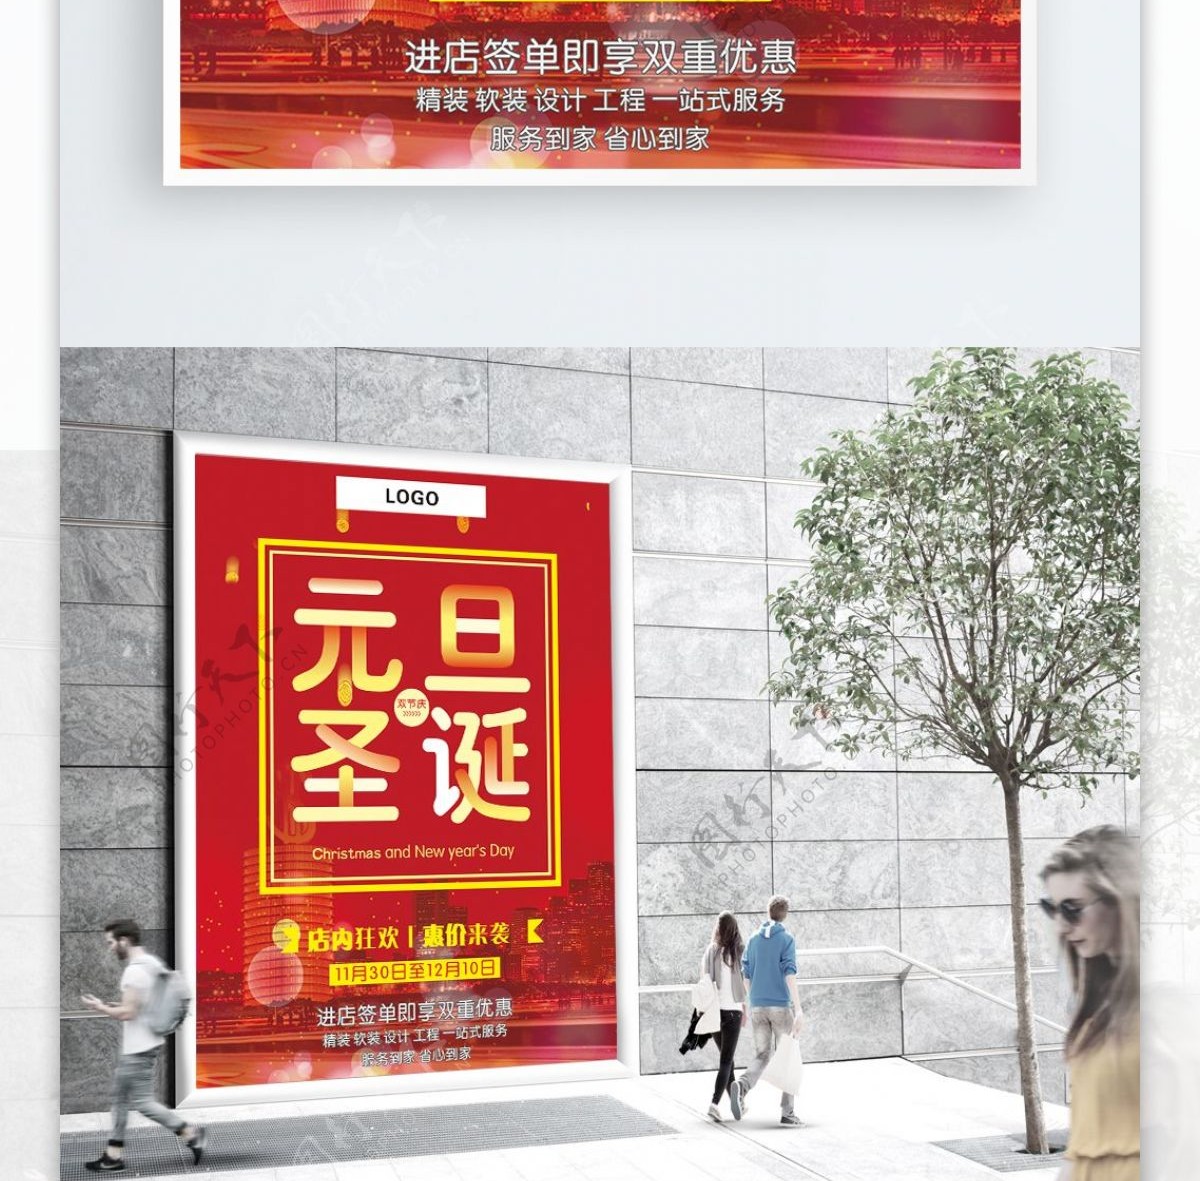 红色喜庆双旦节日促销海报